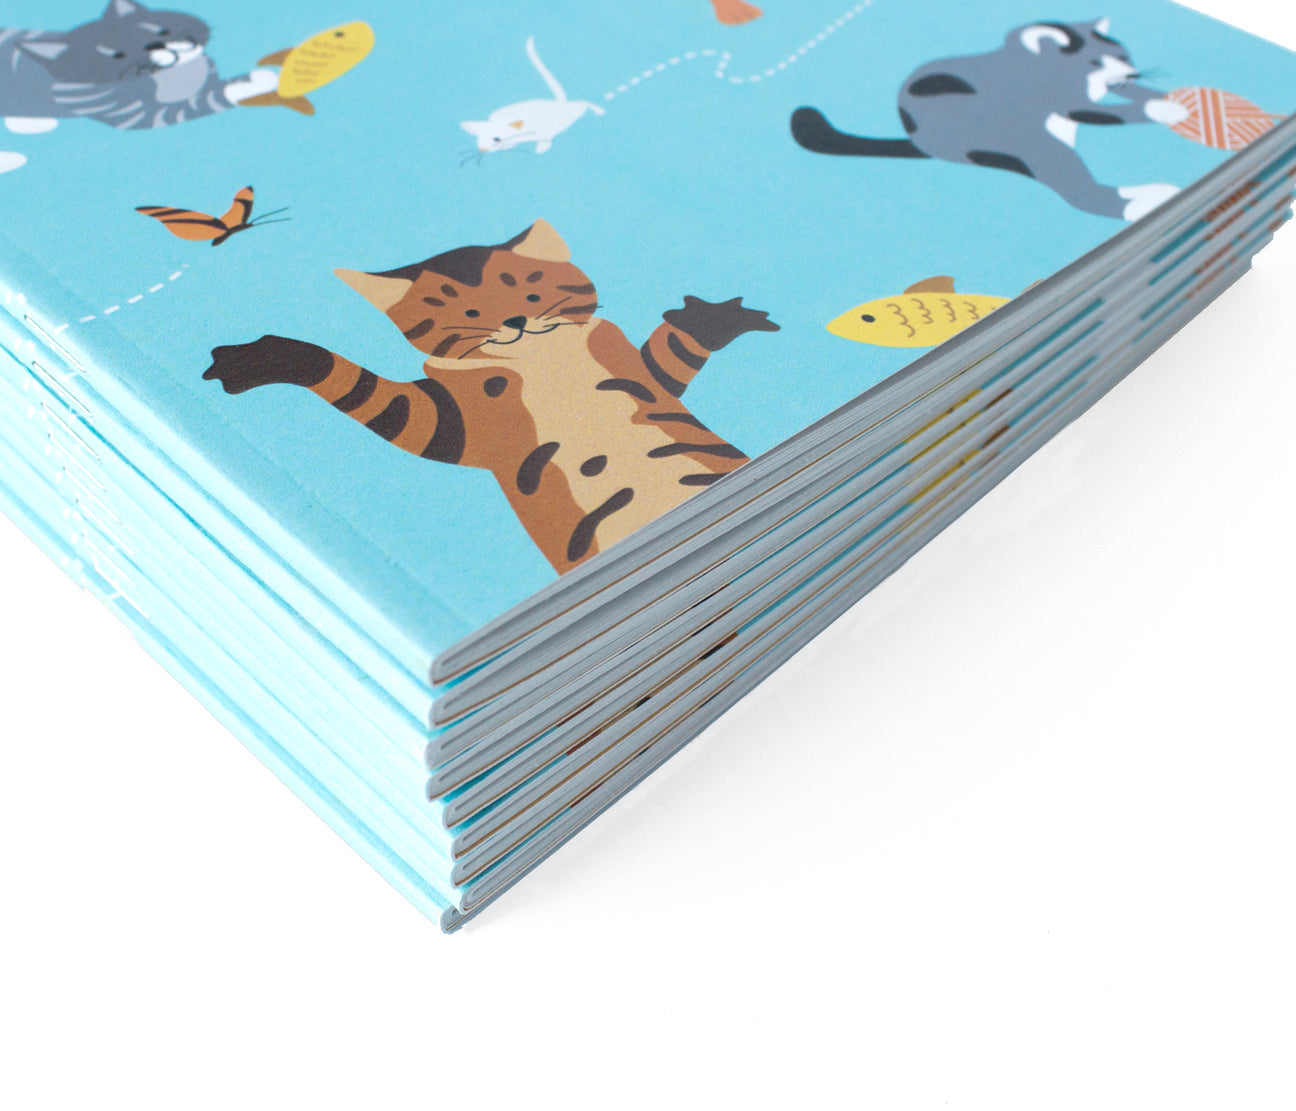 Cat Notebook Journal - Playful cats - The Imagination Spot